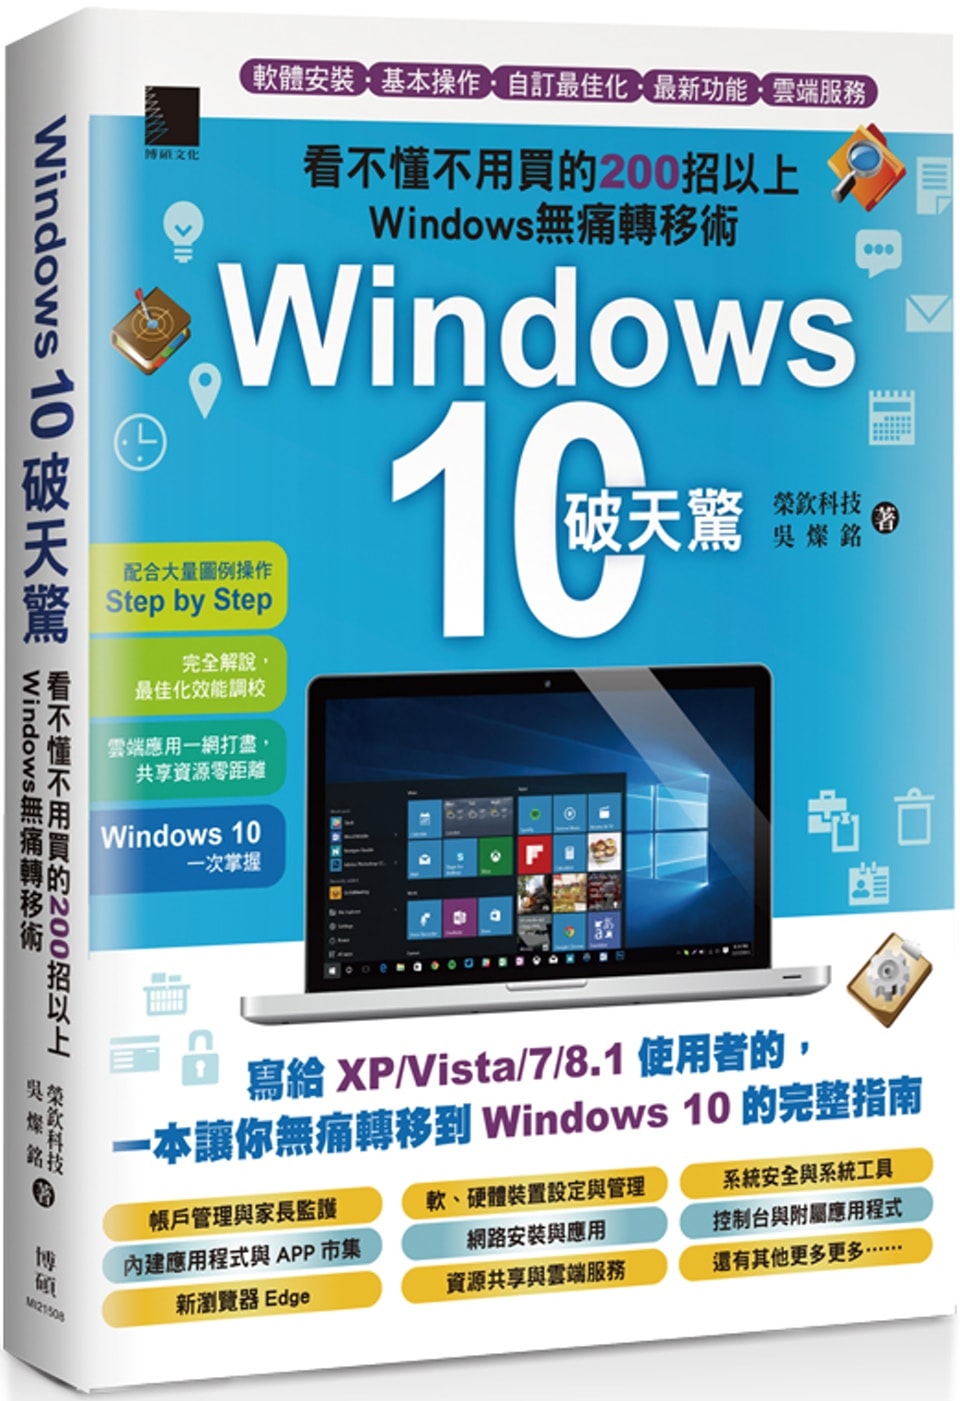 Windows 10破天驚：看不懂不用買的200招以上Windows無痛轉移術